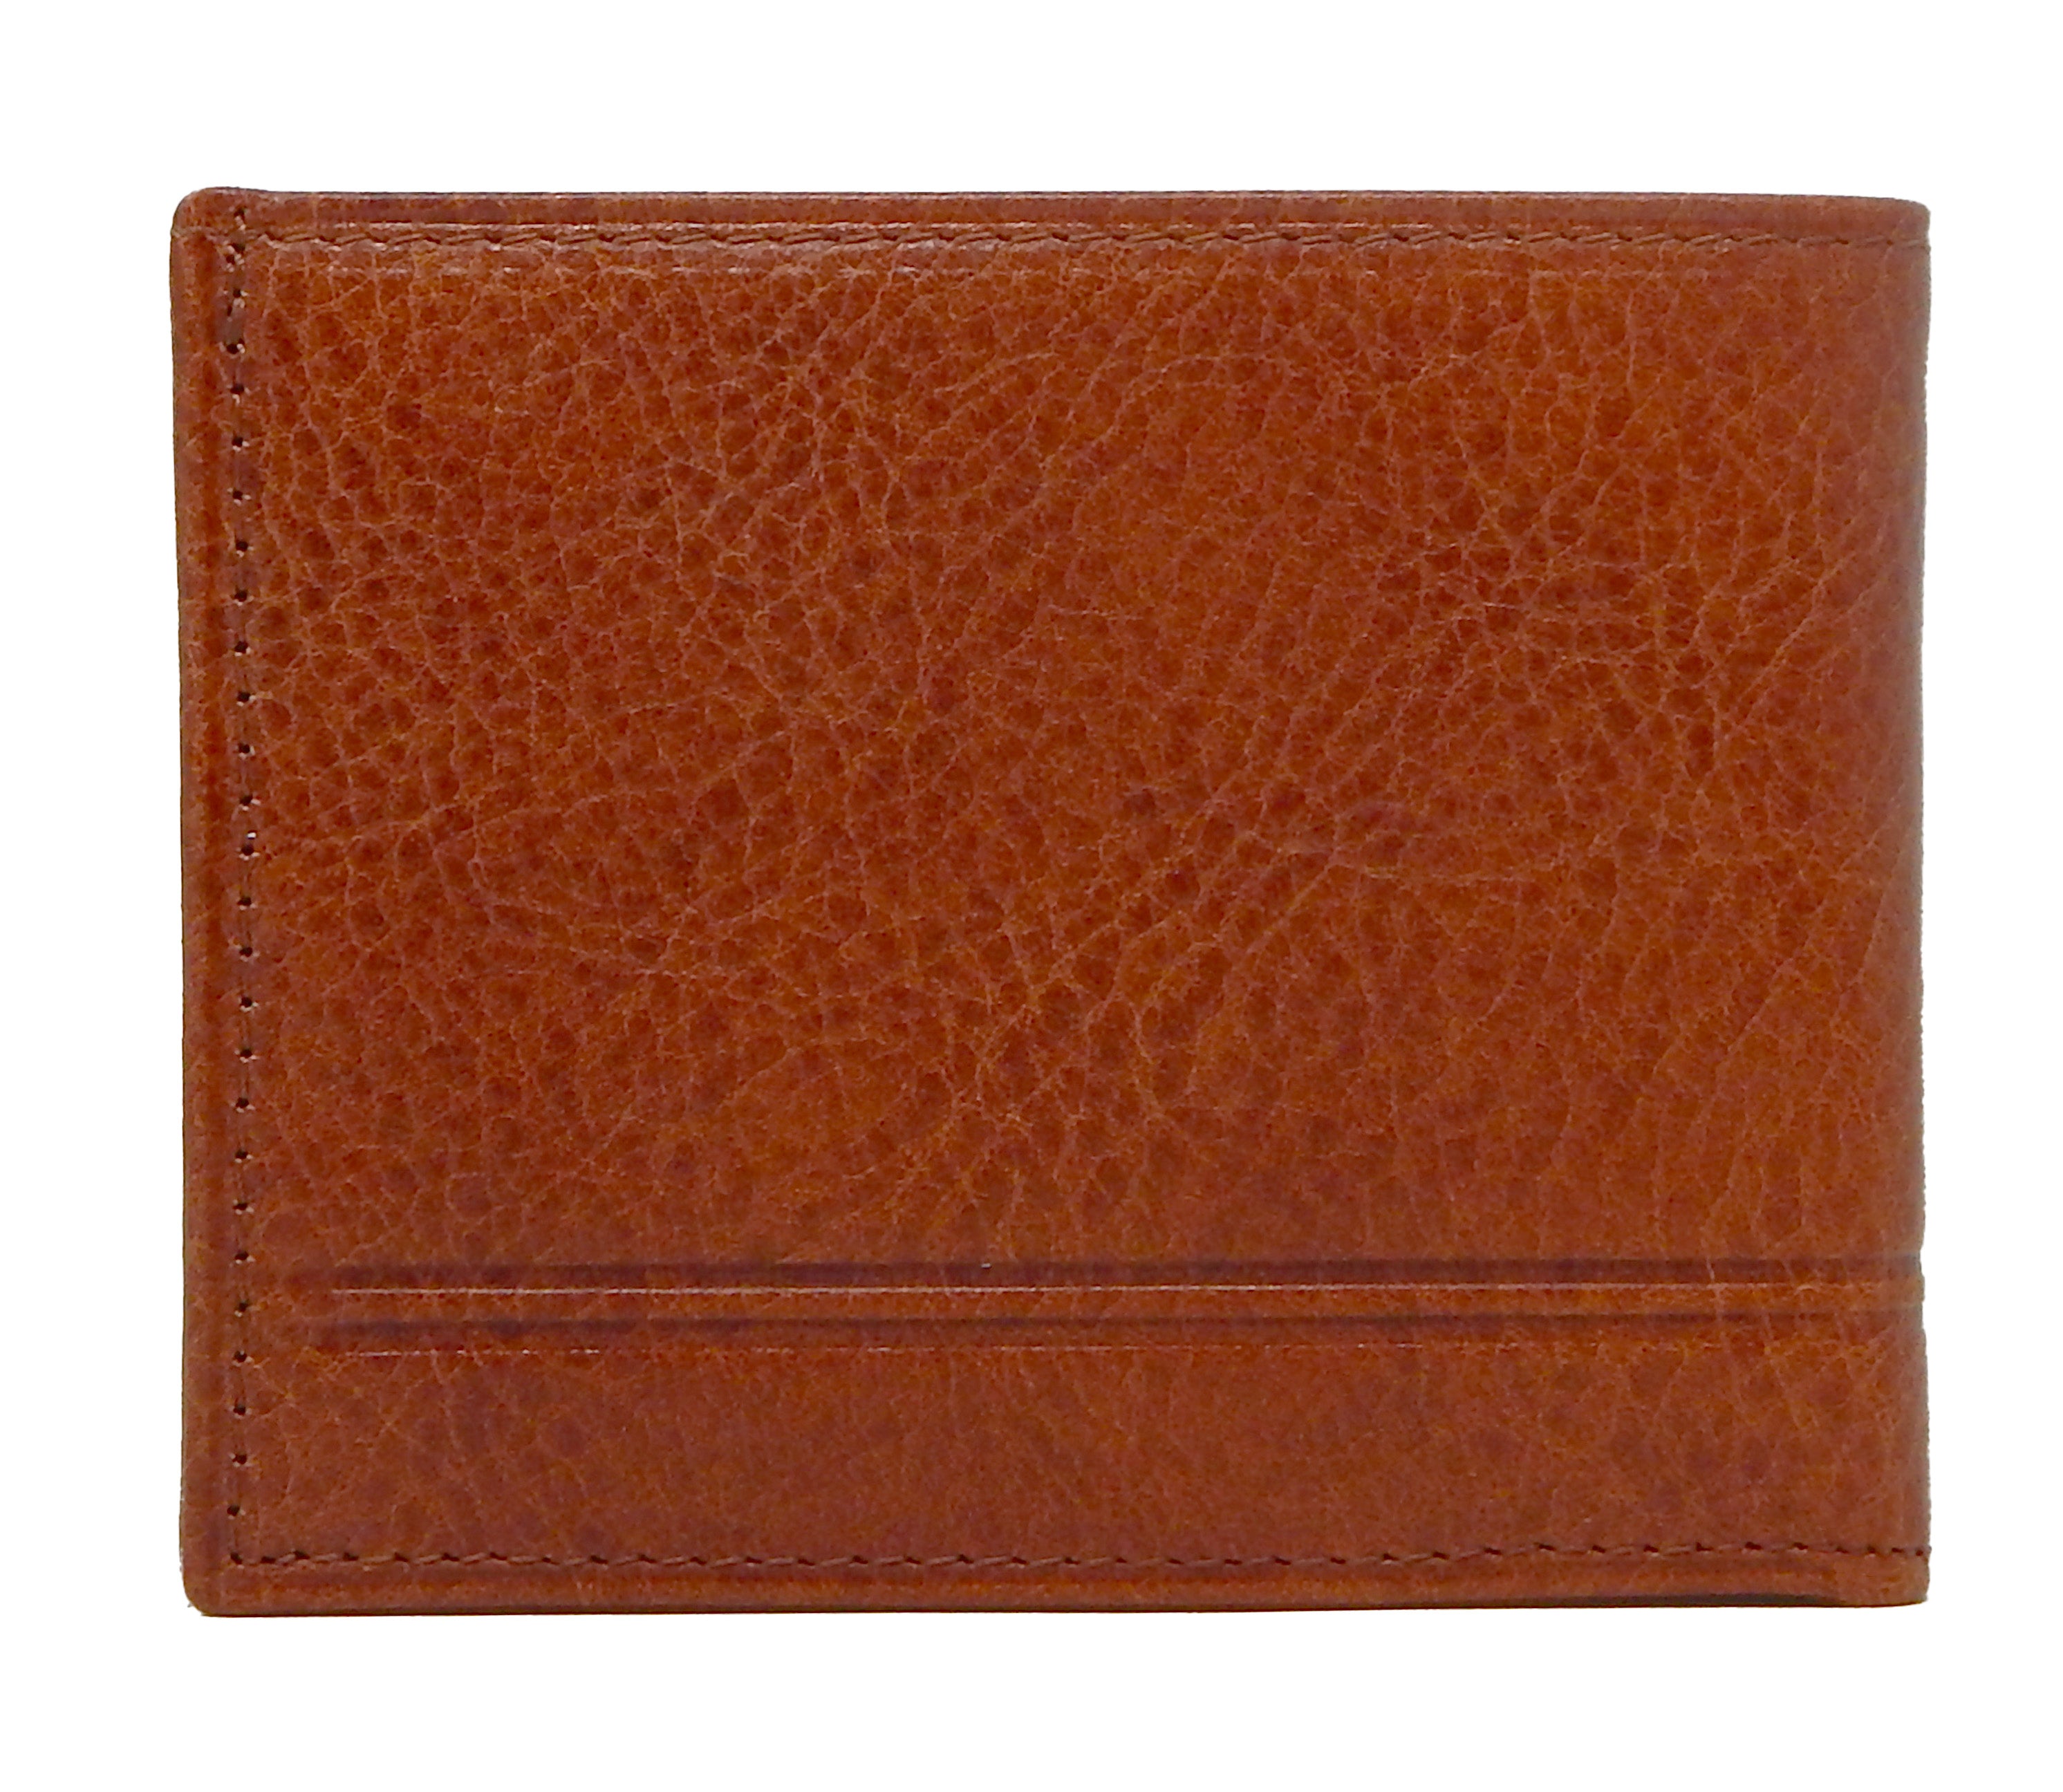 #color_ SaddleBrown | Cavalinho Men's Leather Trifold Leather Wallet - SaddleBrown - 28160529.13.99_3